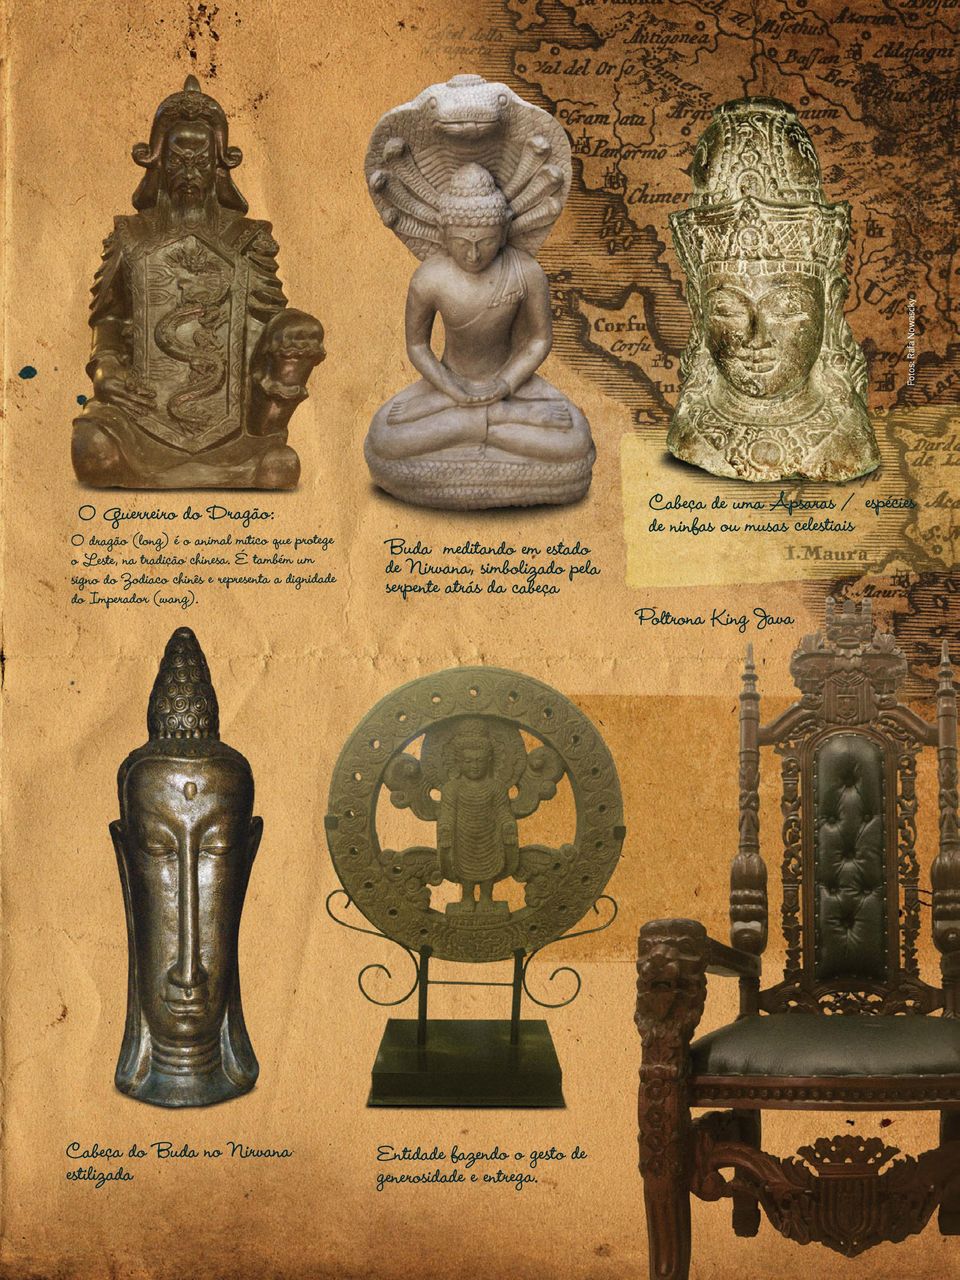 Buda meditando em estado de Nirvana, simbolizado pela serpente atrás da cabeça Cabeça de uma Apsaras / espécies